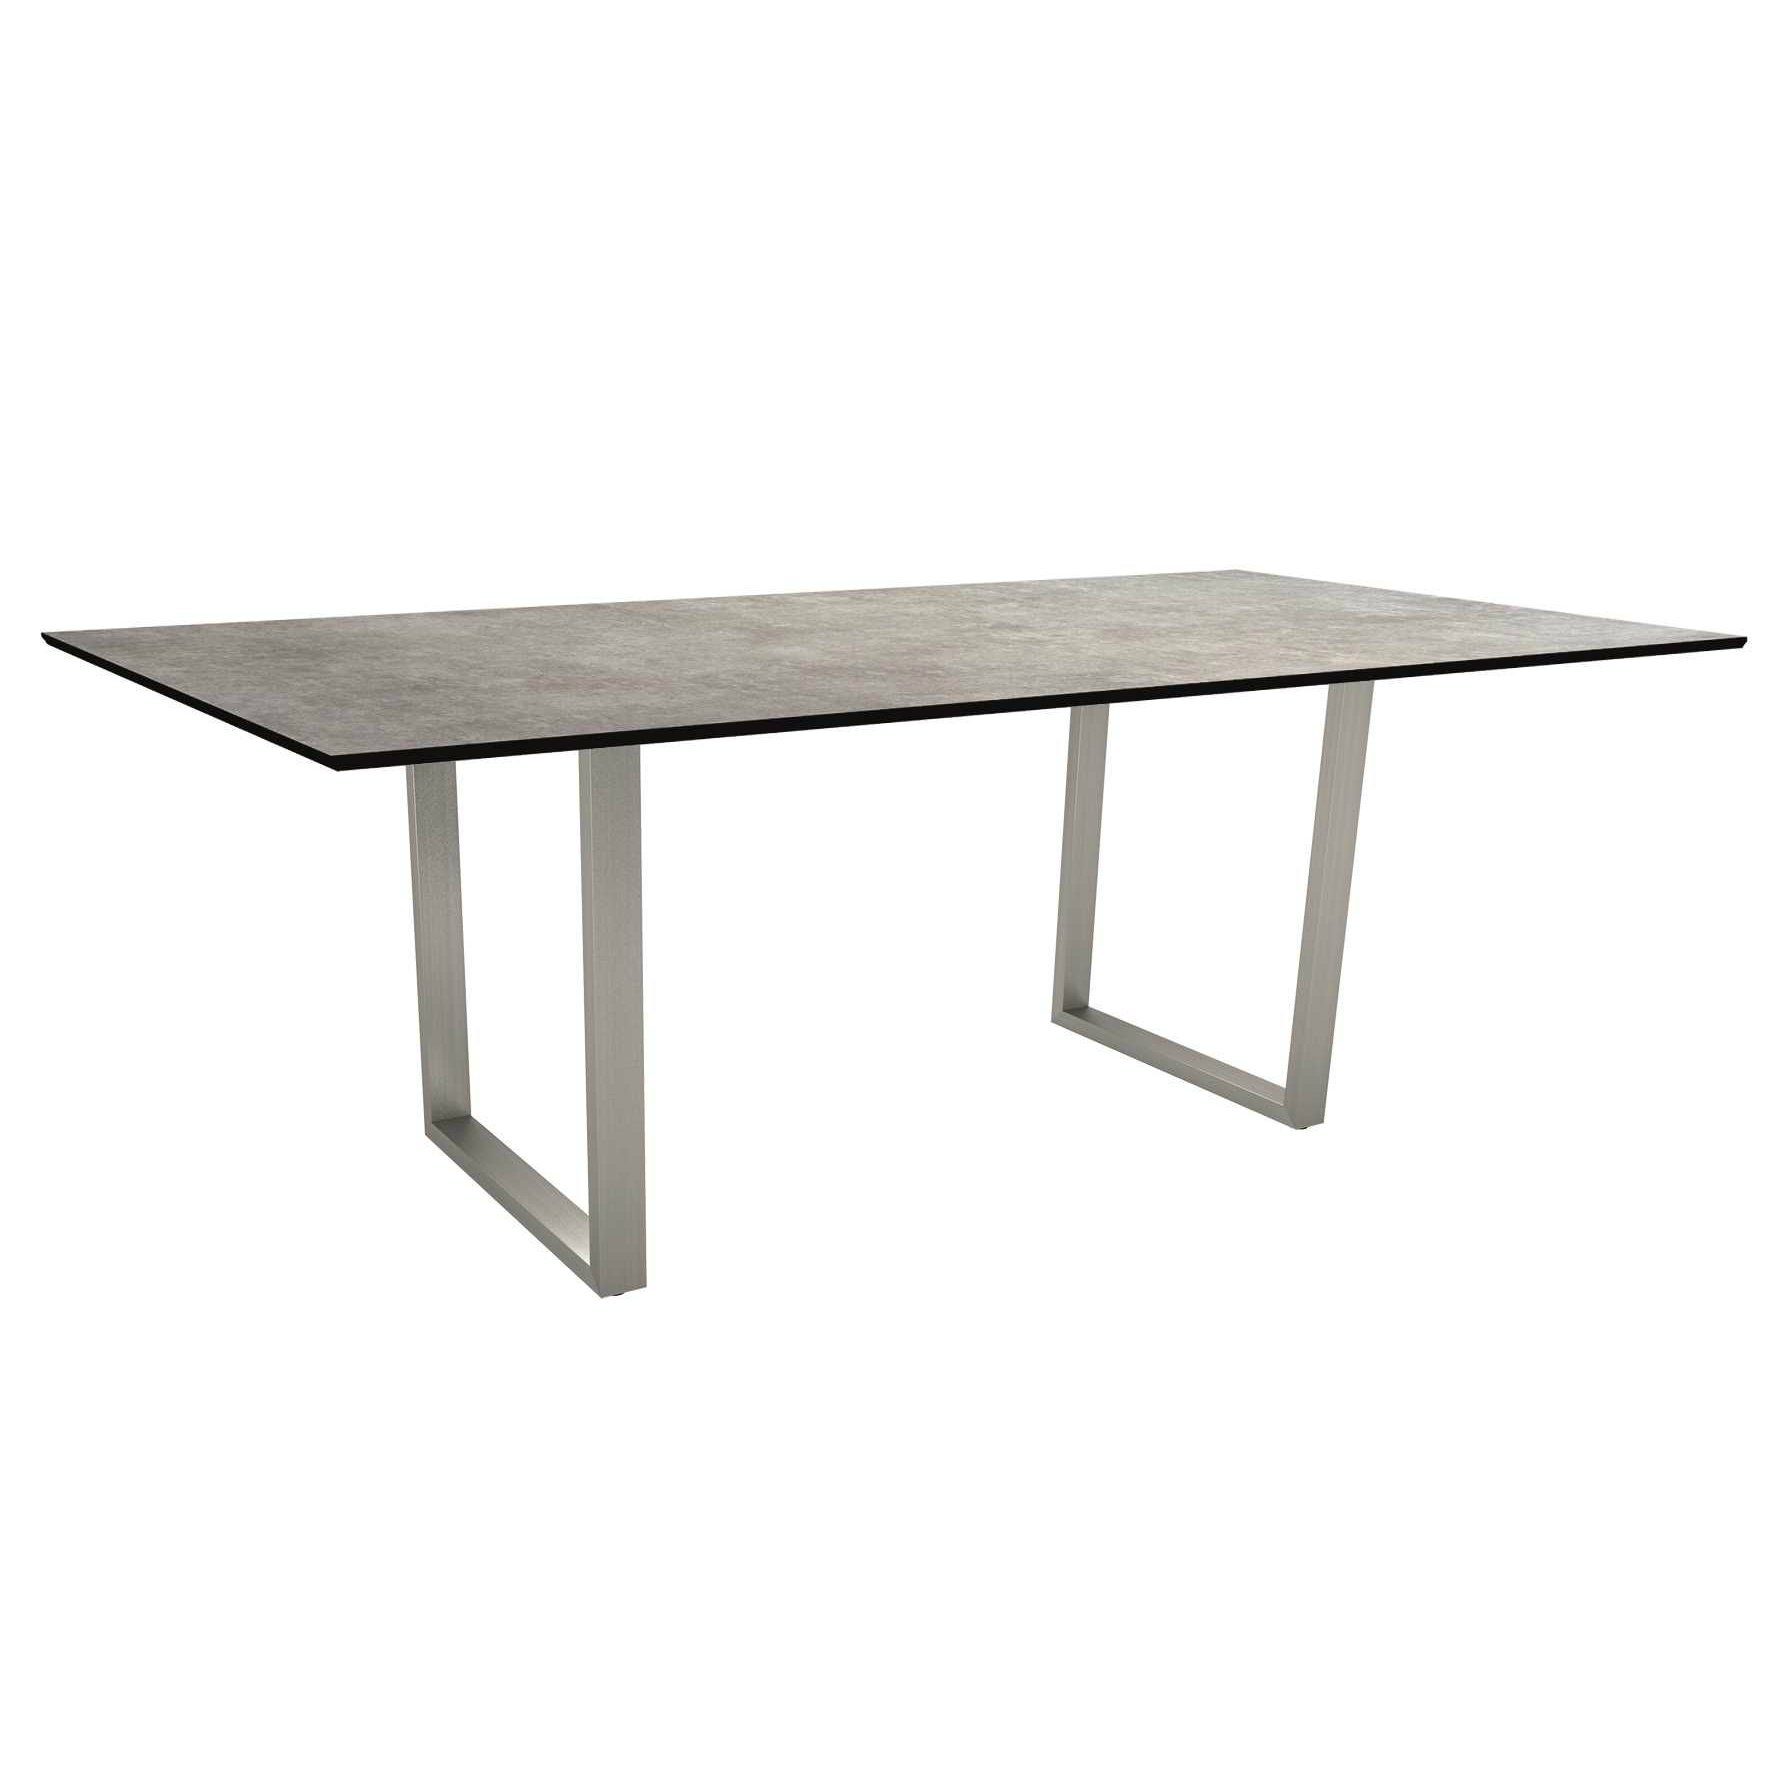 Stern Kufentisch, Gestell Edelstahl, Tischplatte HPL Metallic grau, Tischgröße: 200x100 cm